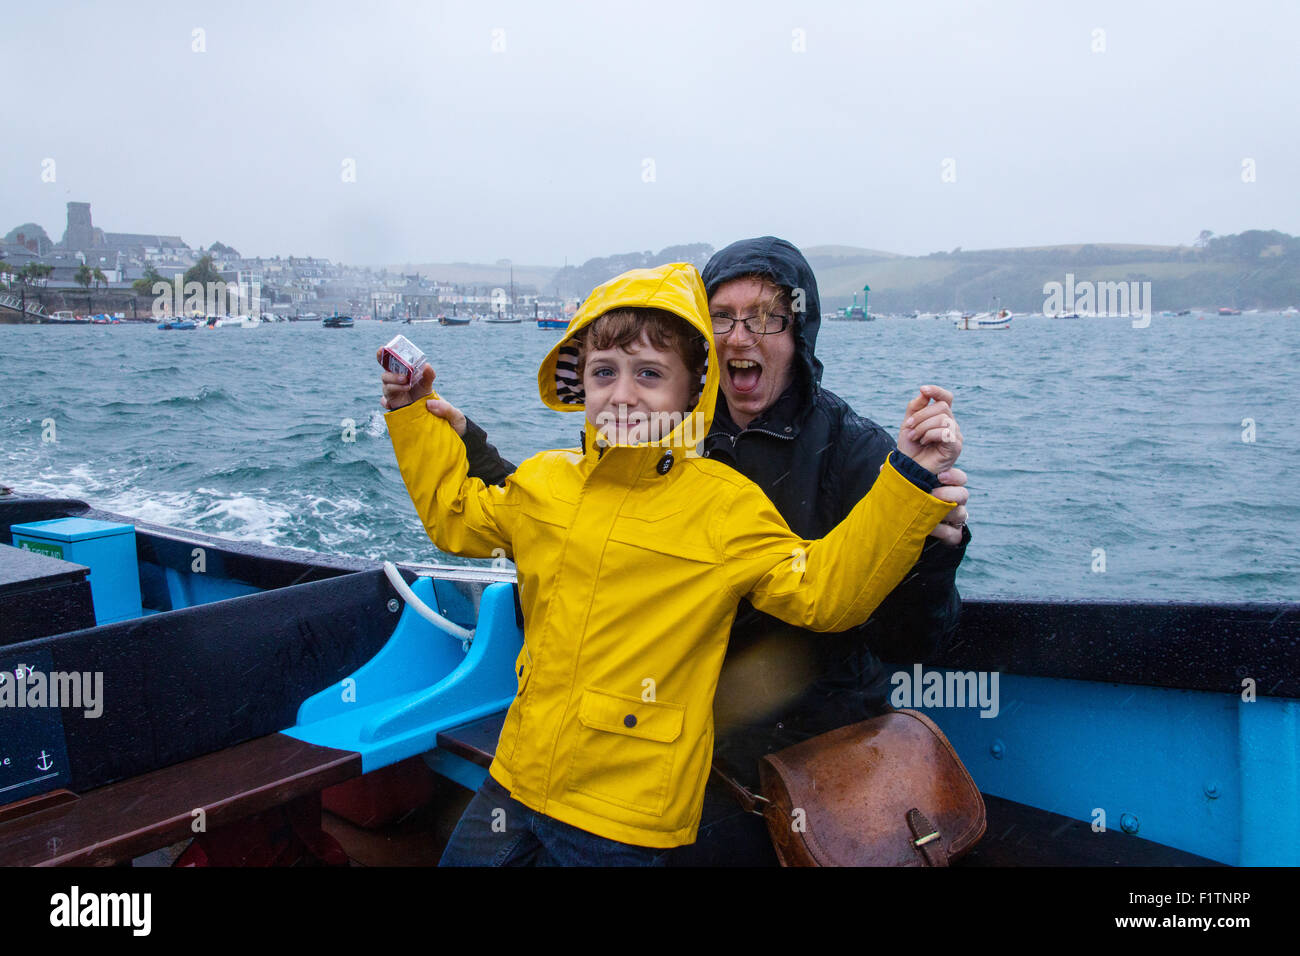 Mère et fils (6 ans) sous la pluie sur le ferry pour passagers Salcombe entre la plage de East Portlemouth et Salcombe,Devon, Angleterre, Royaume-Uni. Banque D'Images